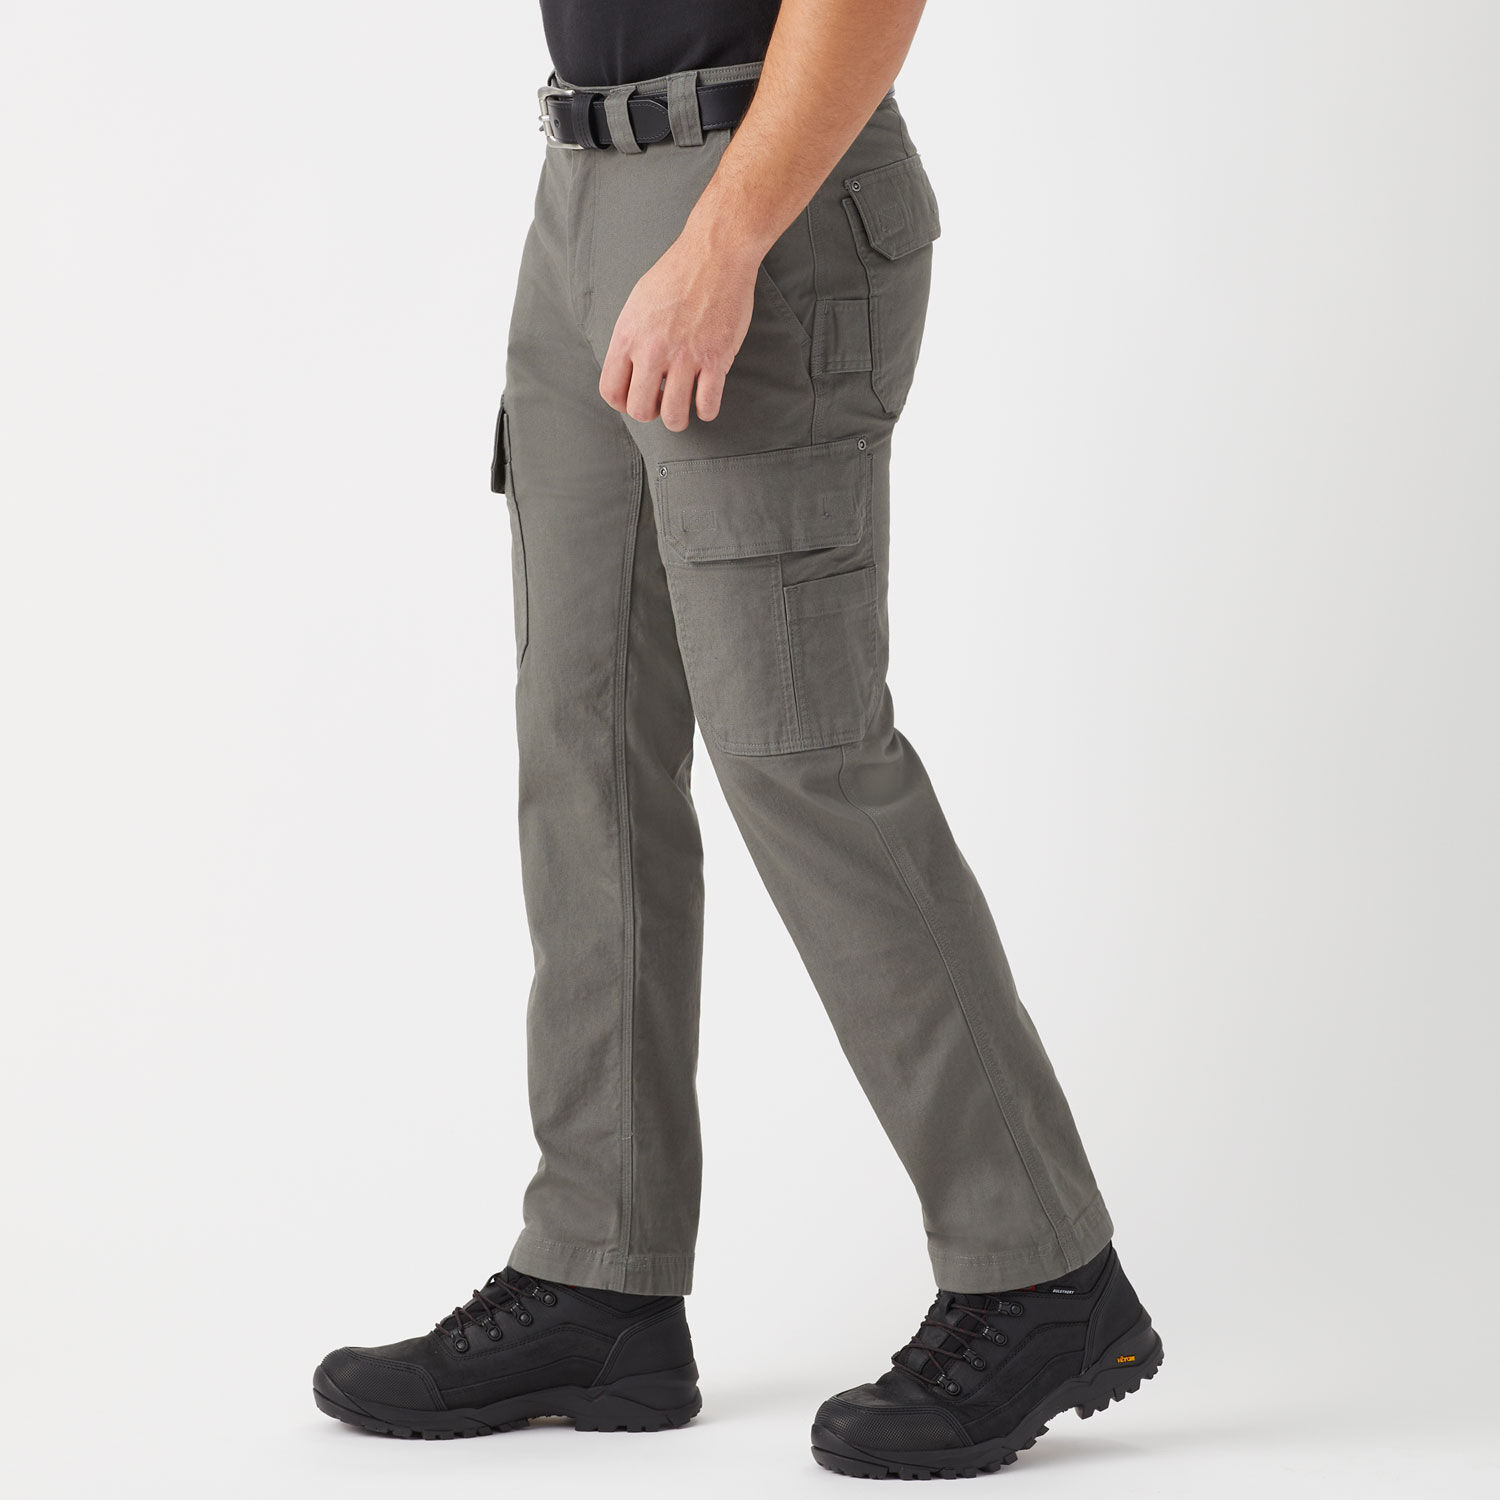 Men's DuluthFlex Fire Hose Slim Fit Cargo Pants